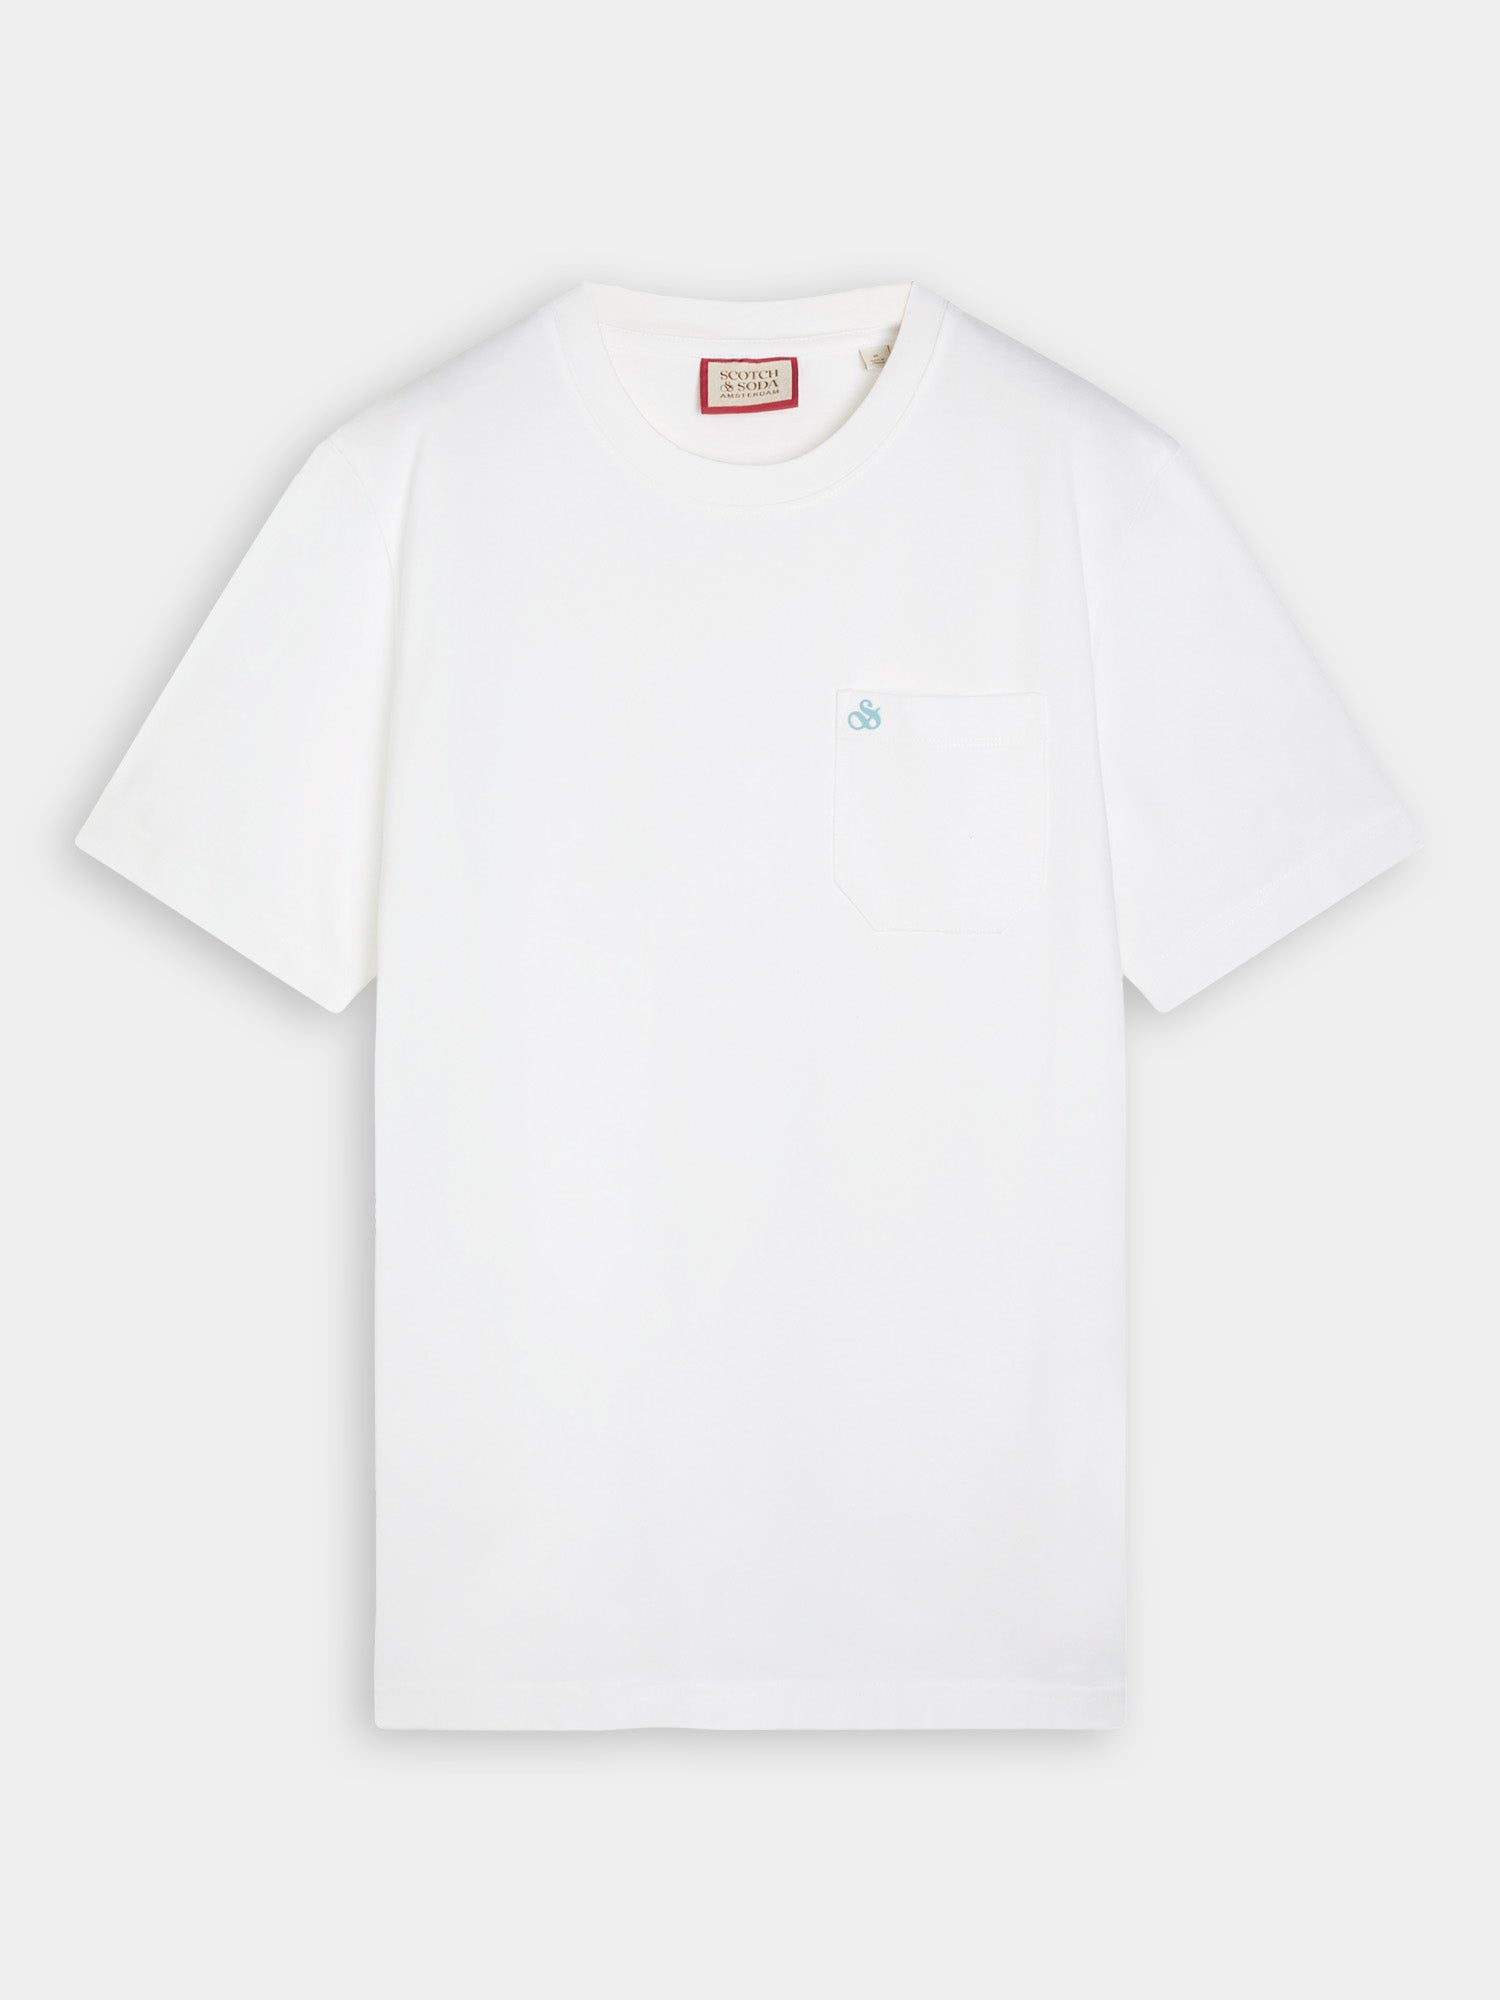 Chest pocket t-shirt - White